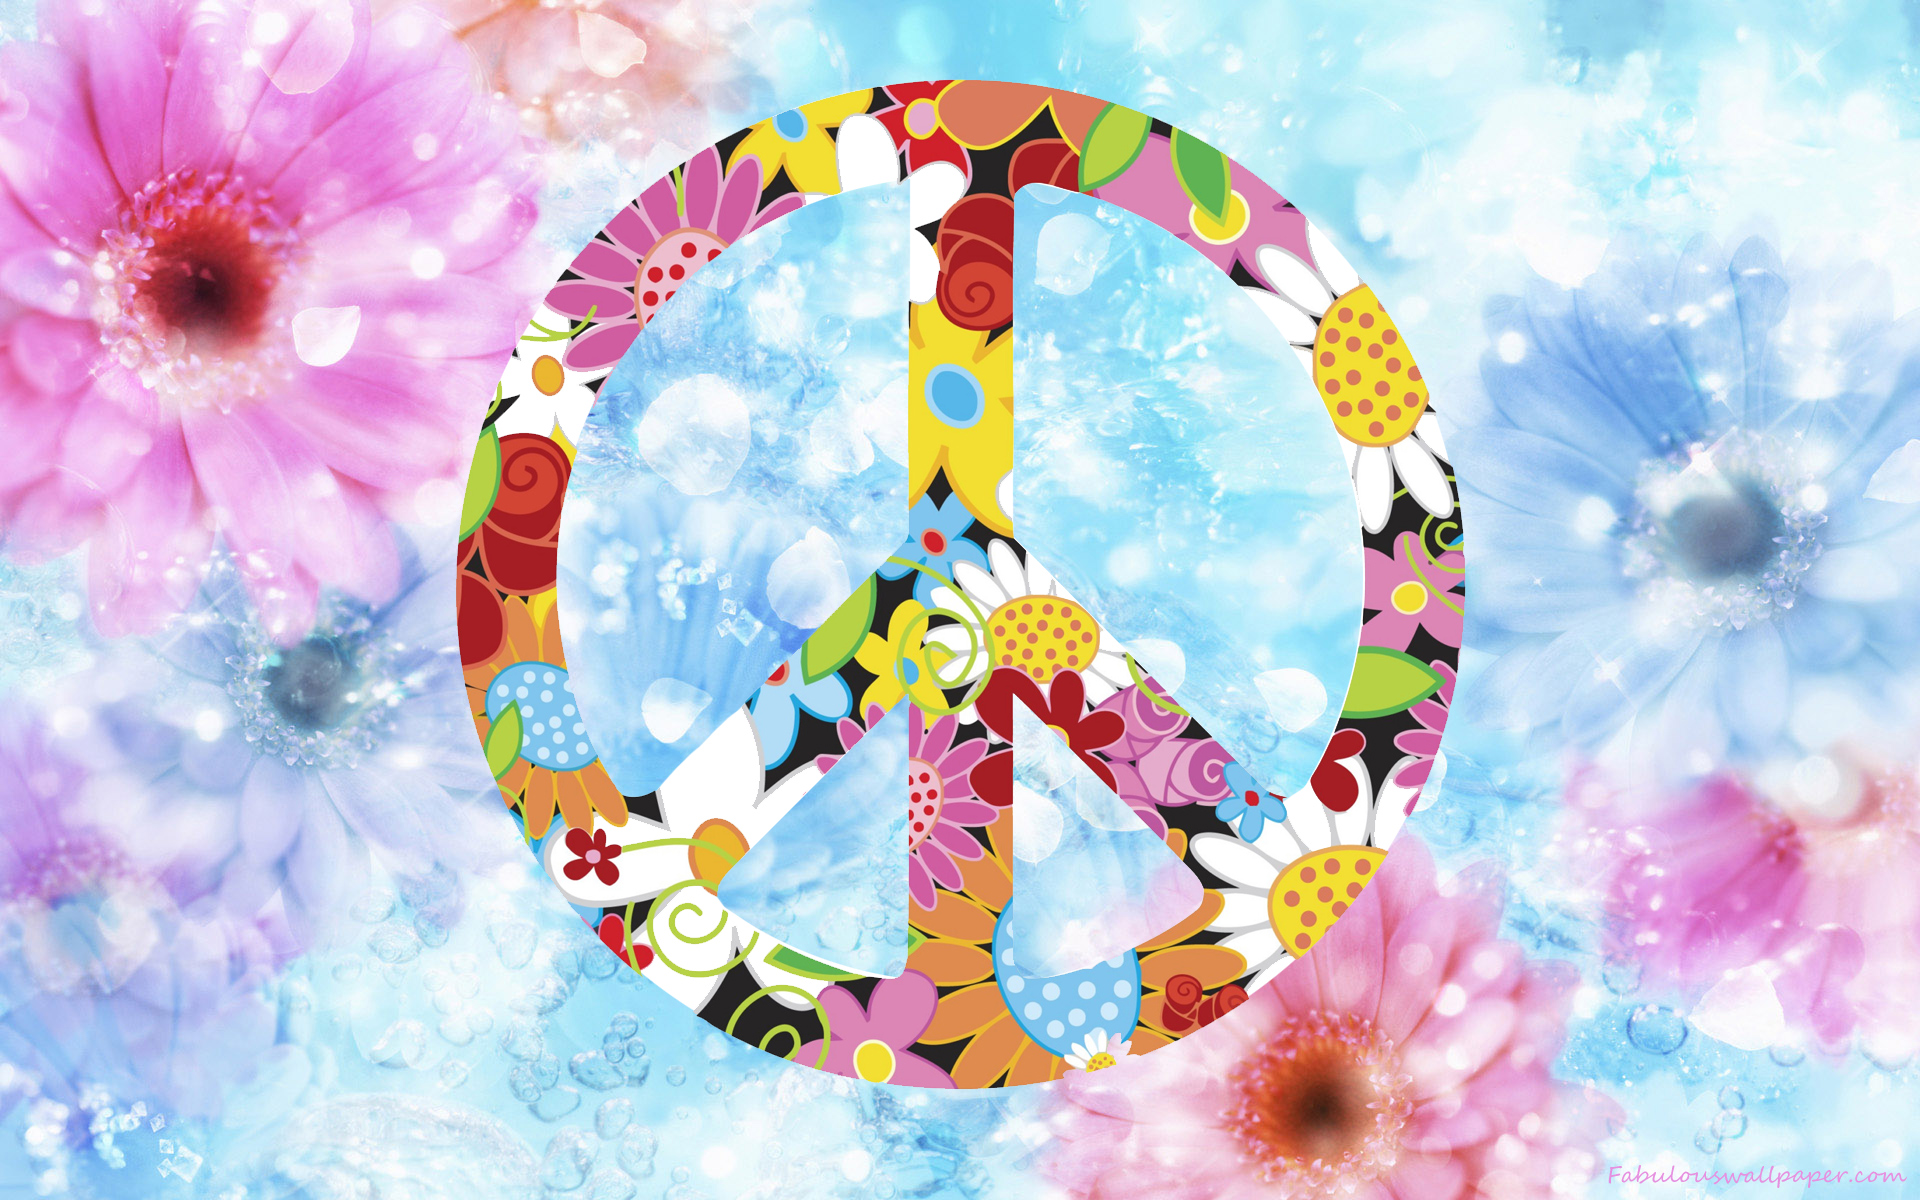 peace wallpaper hd,cerchio,disegno grafico,illustrazione,fiore,modello